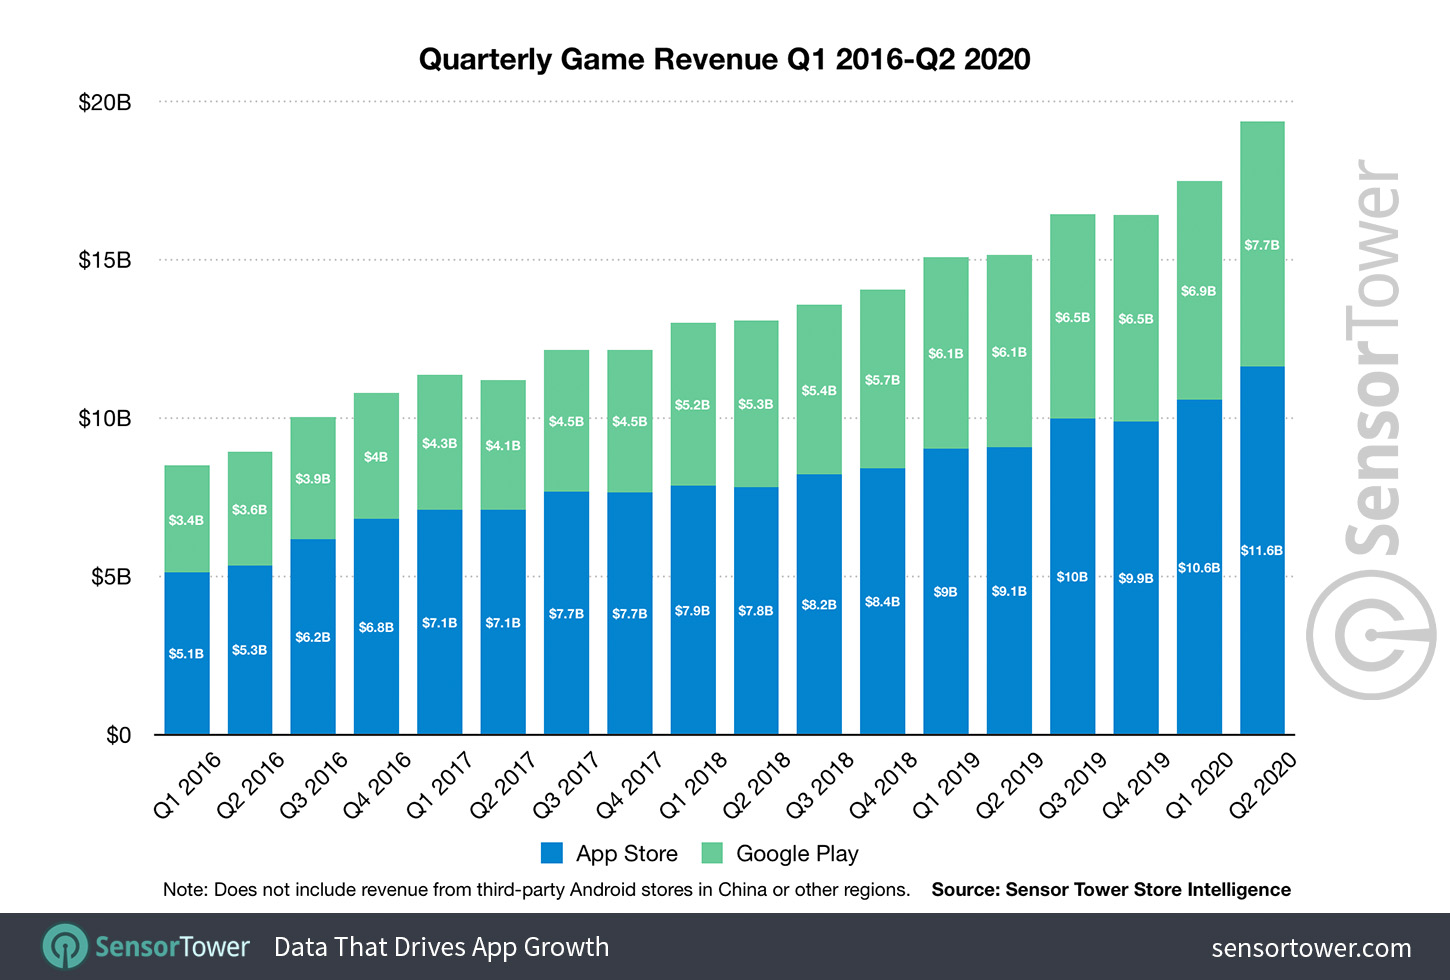 Quarterly Game Revenue Q1 2016 to Q2 2020